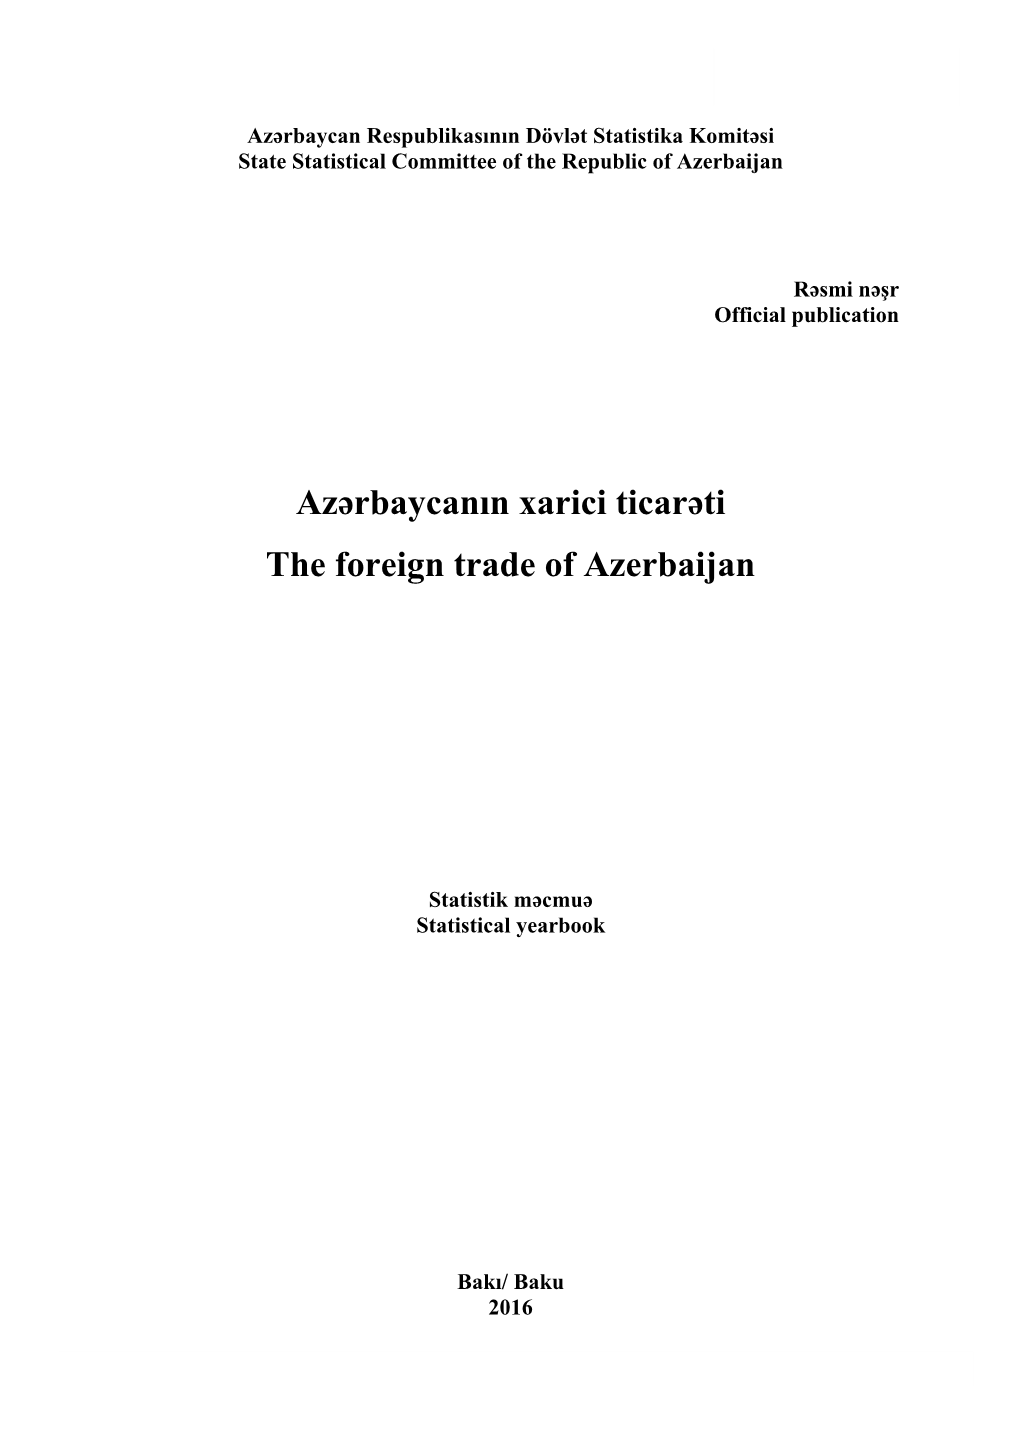 Azərbaycanın Xarici Ticarəti the Foreign Trade of Azerbaijan